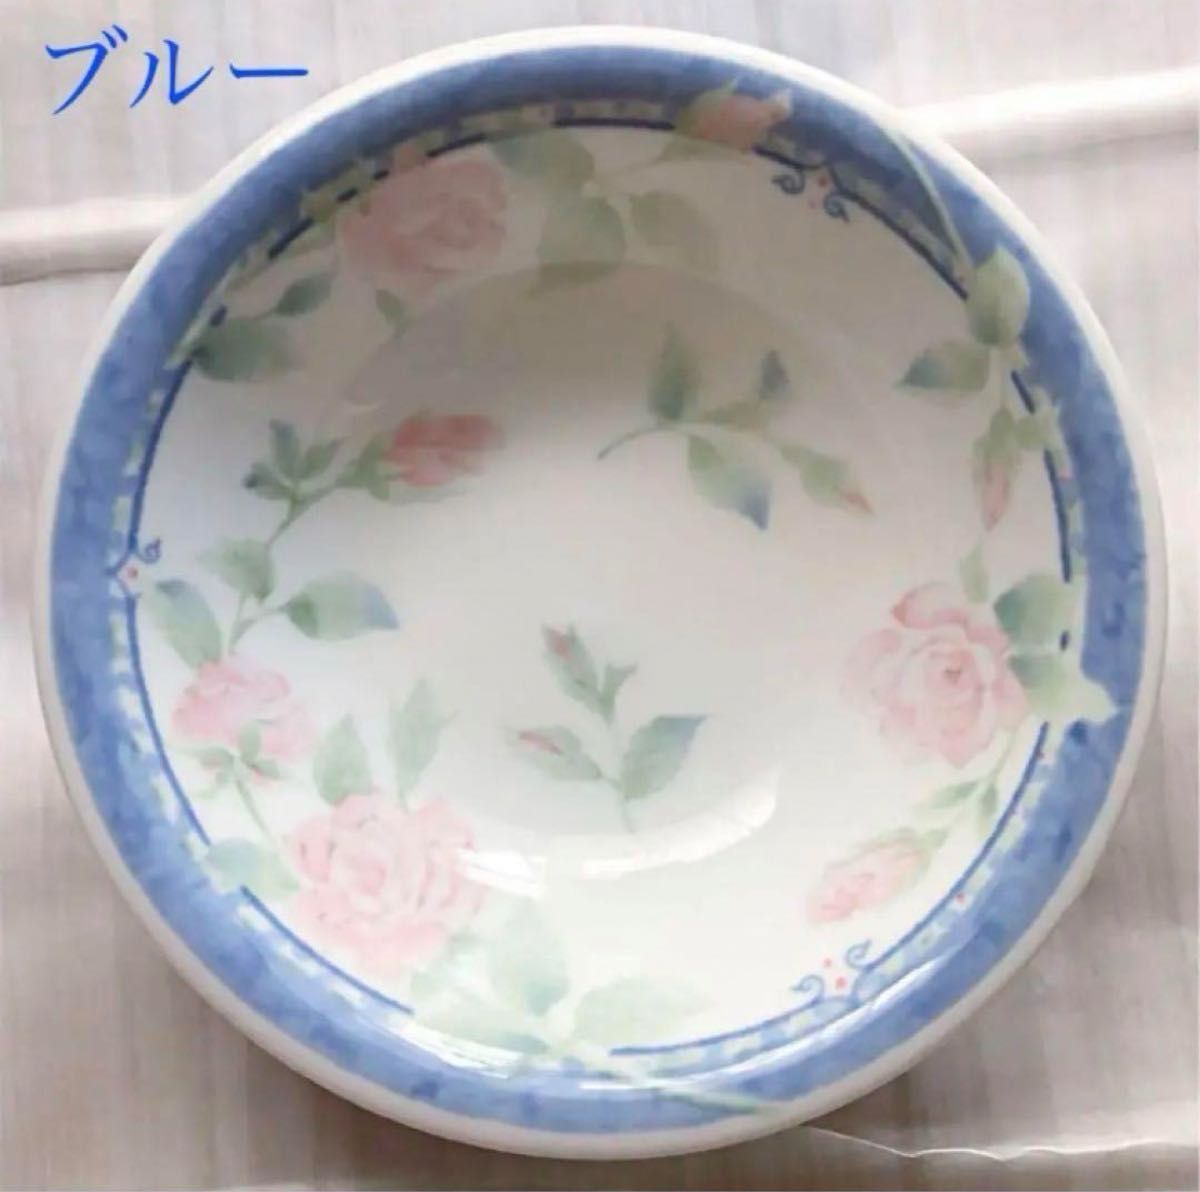 Aoi CHINA アオイ チャイナ 花柄 小皿3枚セット サラダ お皿 キッチン 食器